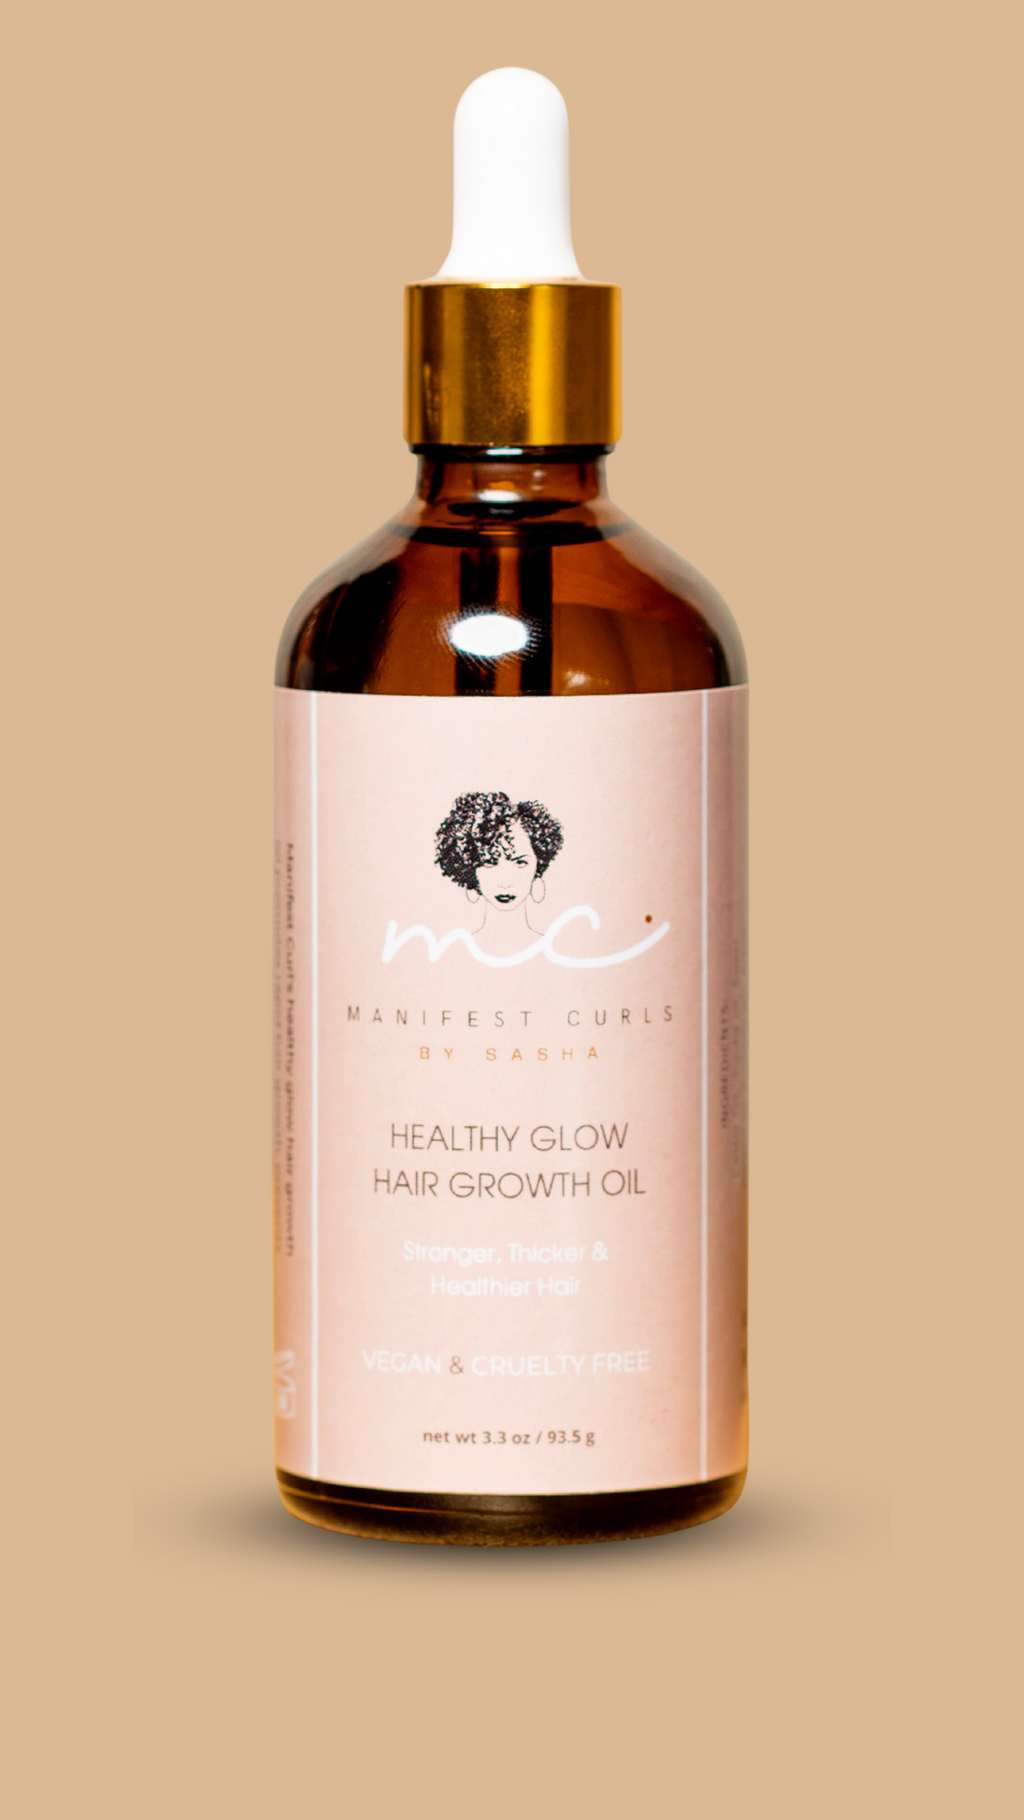 Healthy Glow Hair Growth Oil – Manifest Curls